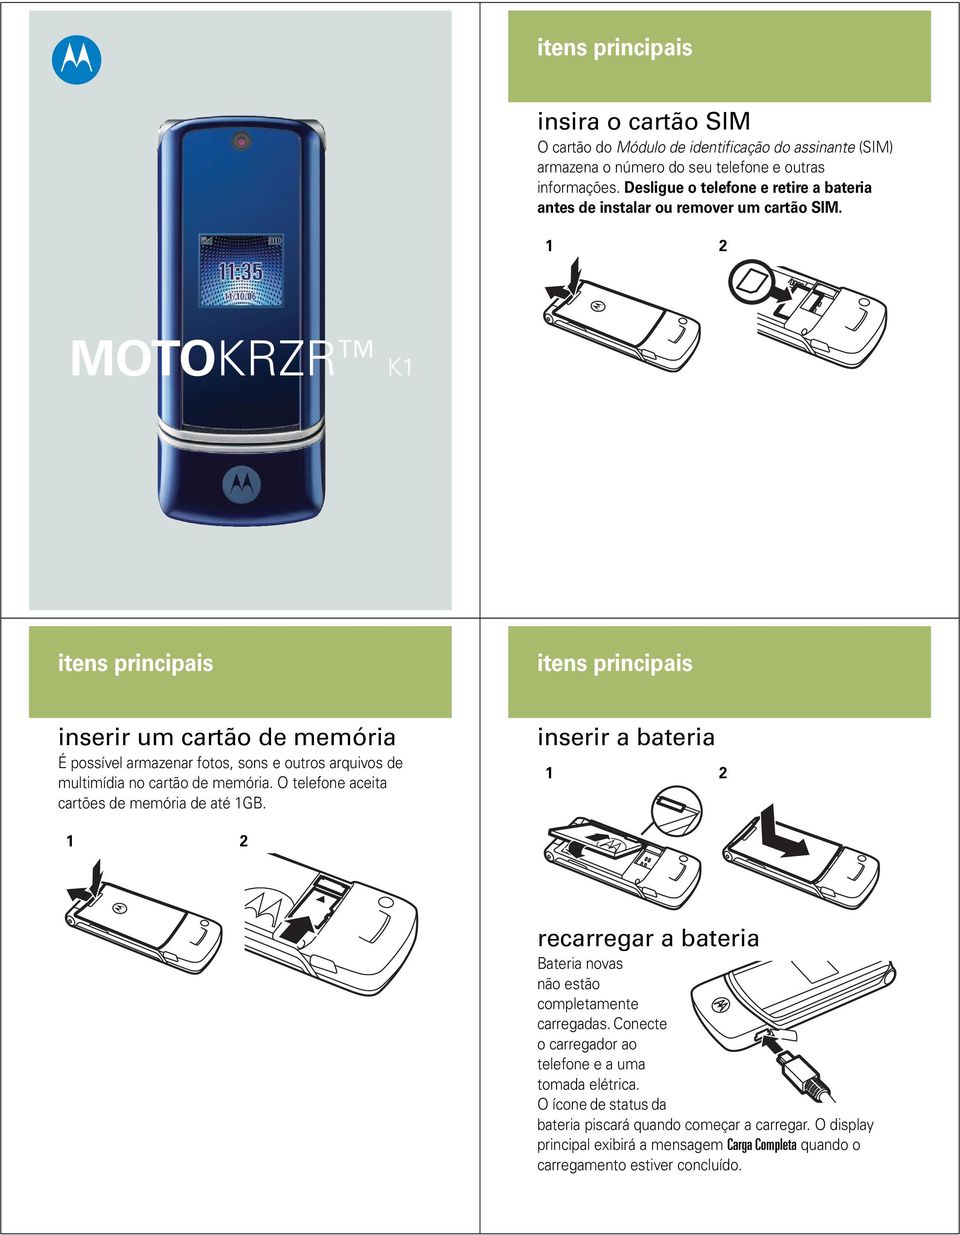 MOTOKRZR K1 inserir um cartão de memória É possível armazenar fotos, sons e outros arquivos de multimídia no cartão de memória.